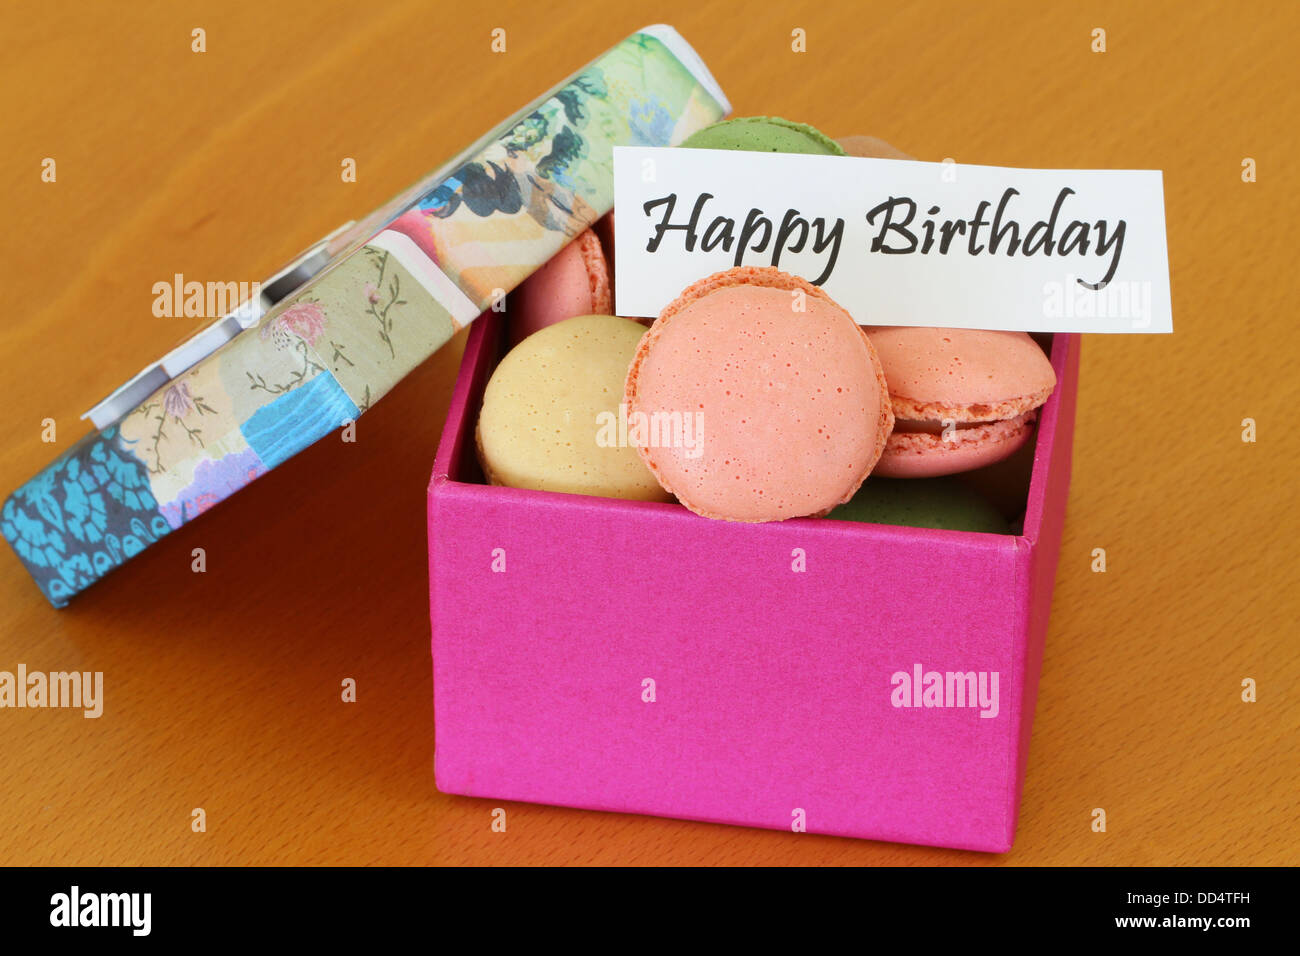 Joyeux anniversaire carte avec boite de macarons colorés Banque D'Images